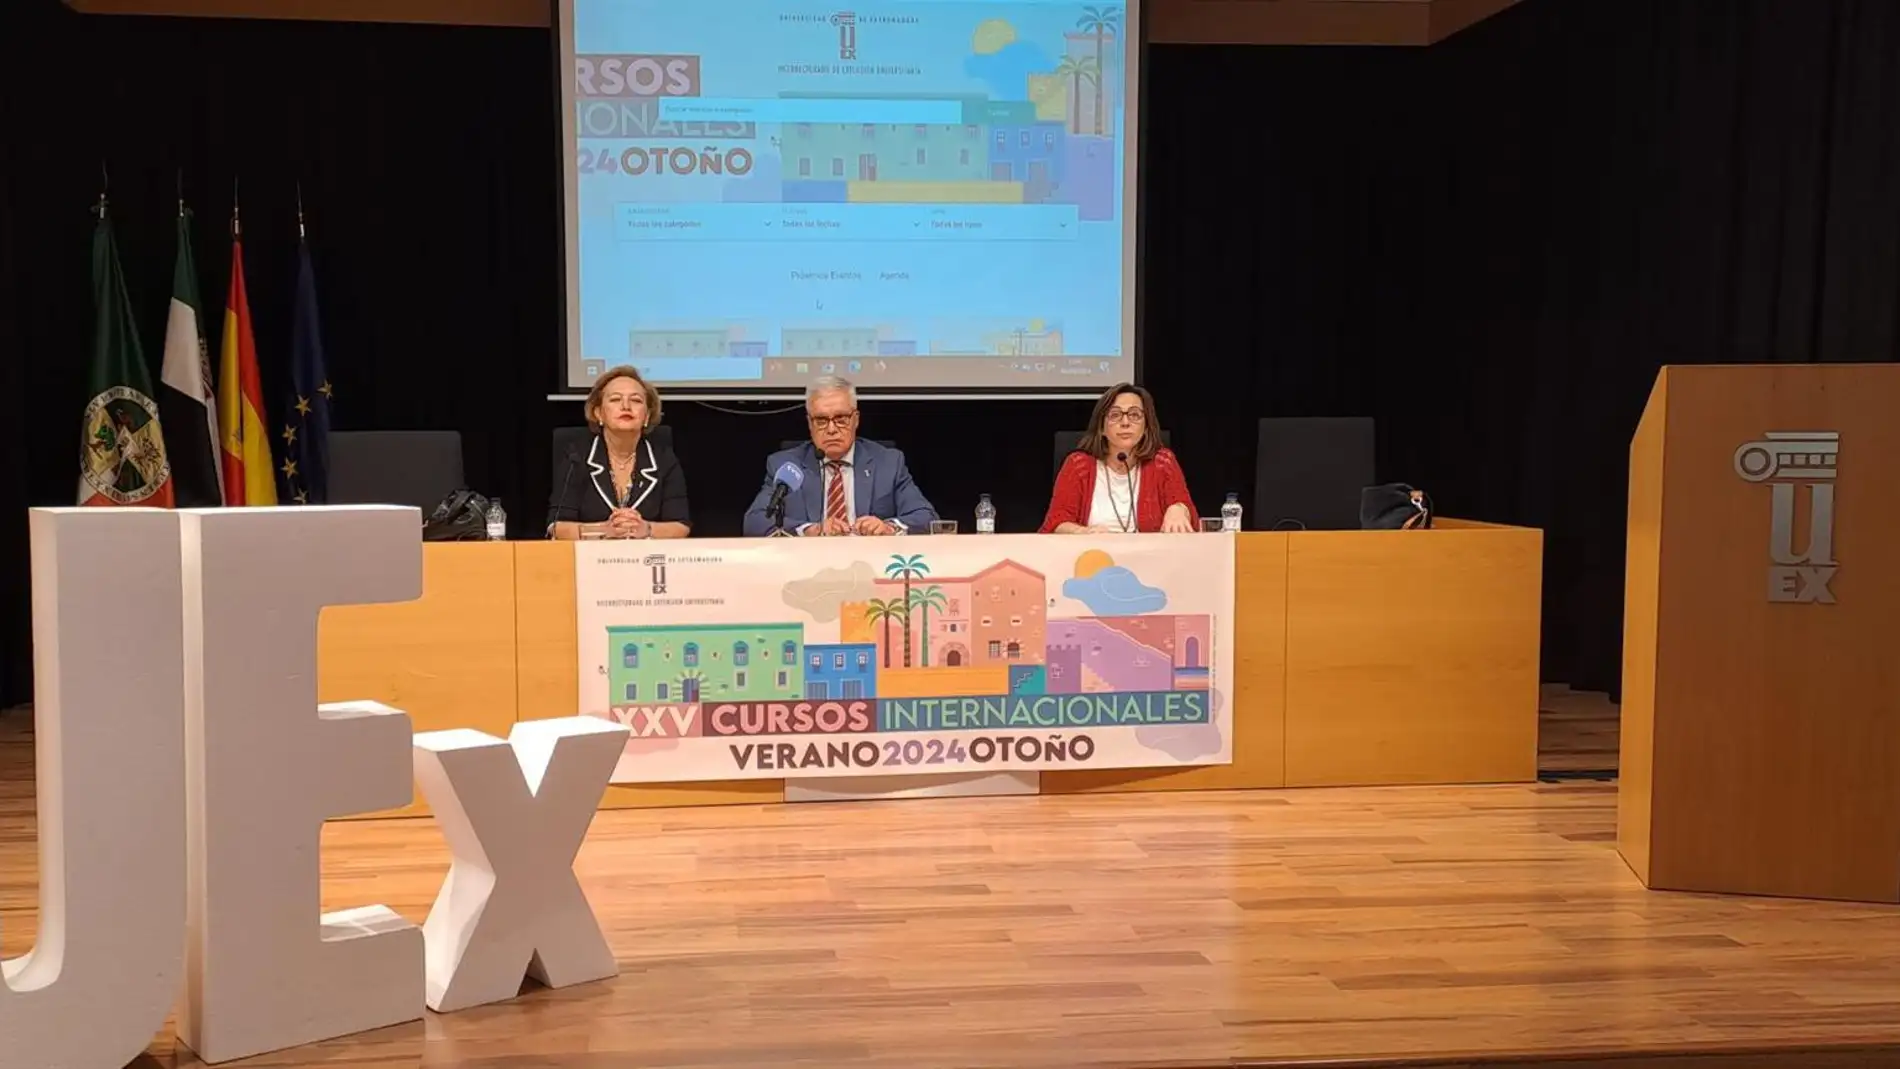 La Universidad de Extremadura ofrecerá 24 cursos internacionales de verano-otoño, cinco más que el año pasado